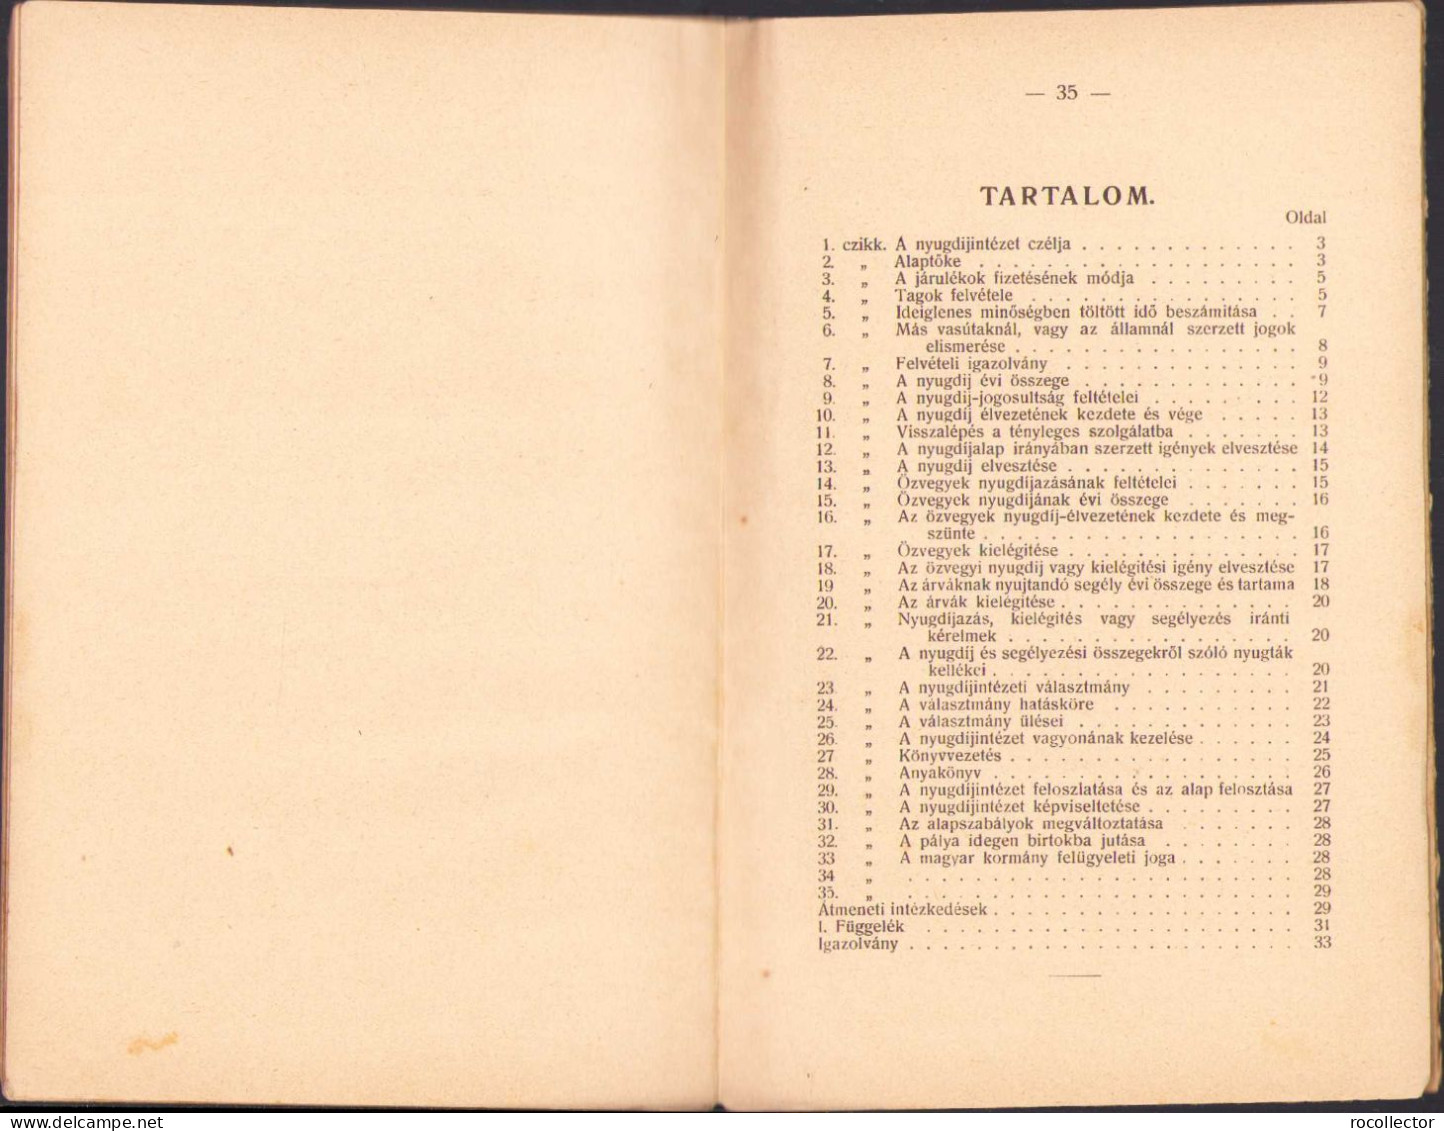 A Szamosvölgyi Vasút Hivatalnokai, Altisztjei és Szolgái Nyugdijintézetének Alapszabályai 1909 C1142 - Alte Bücher